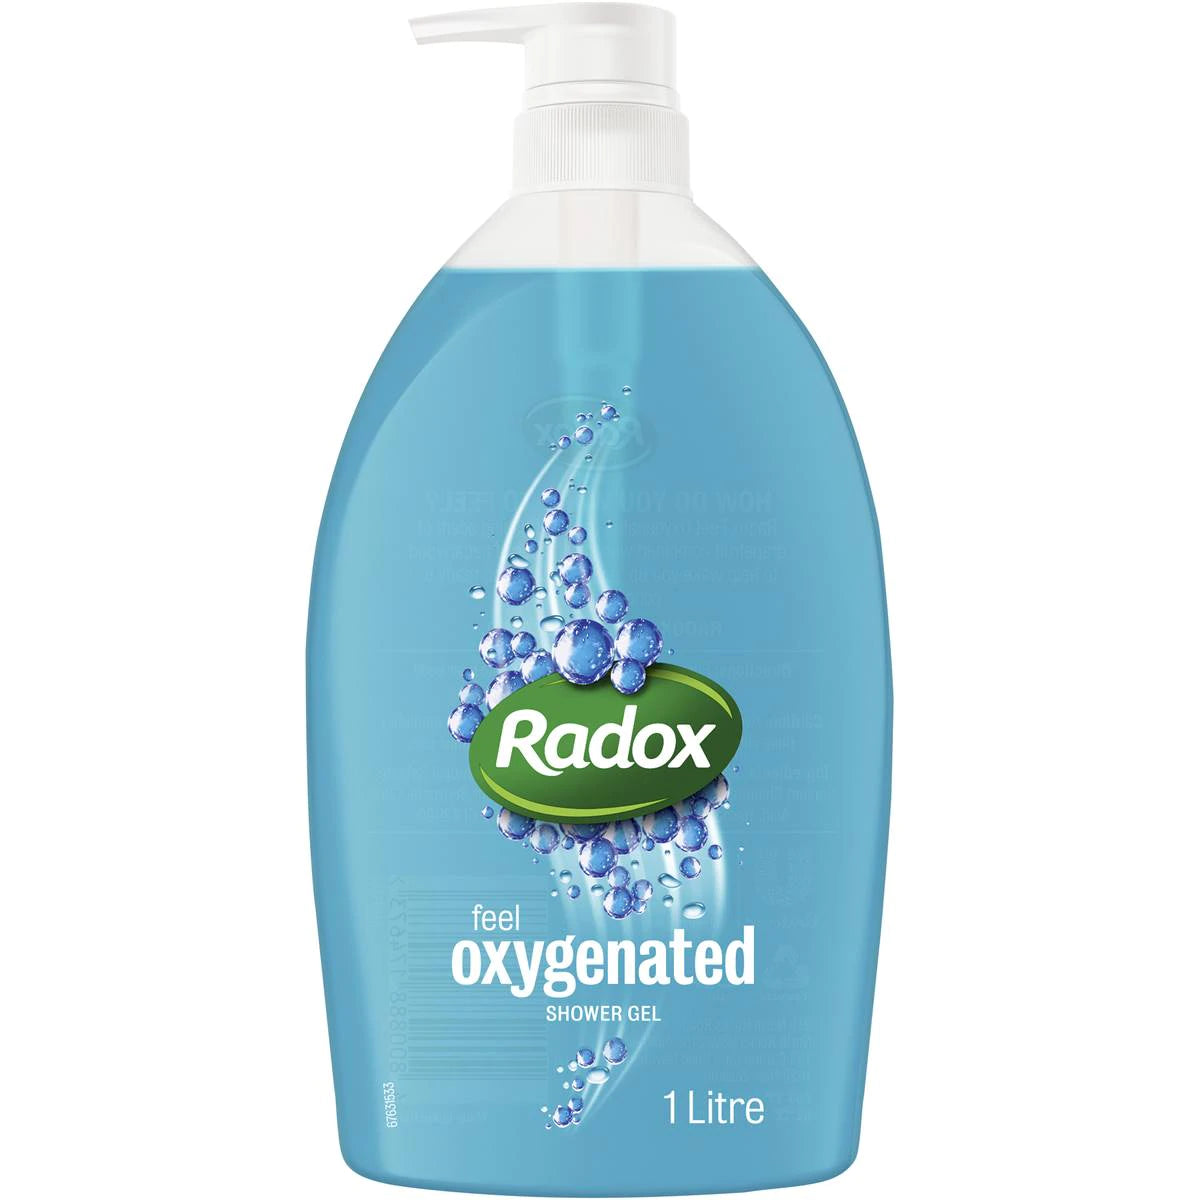 Radox Shower Gel Feel Oxygenated 1L